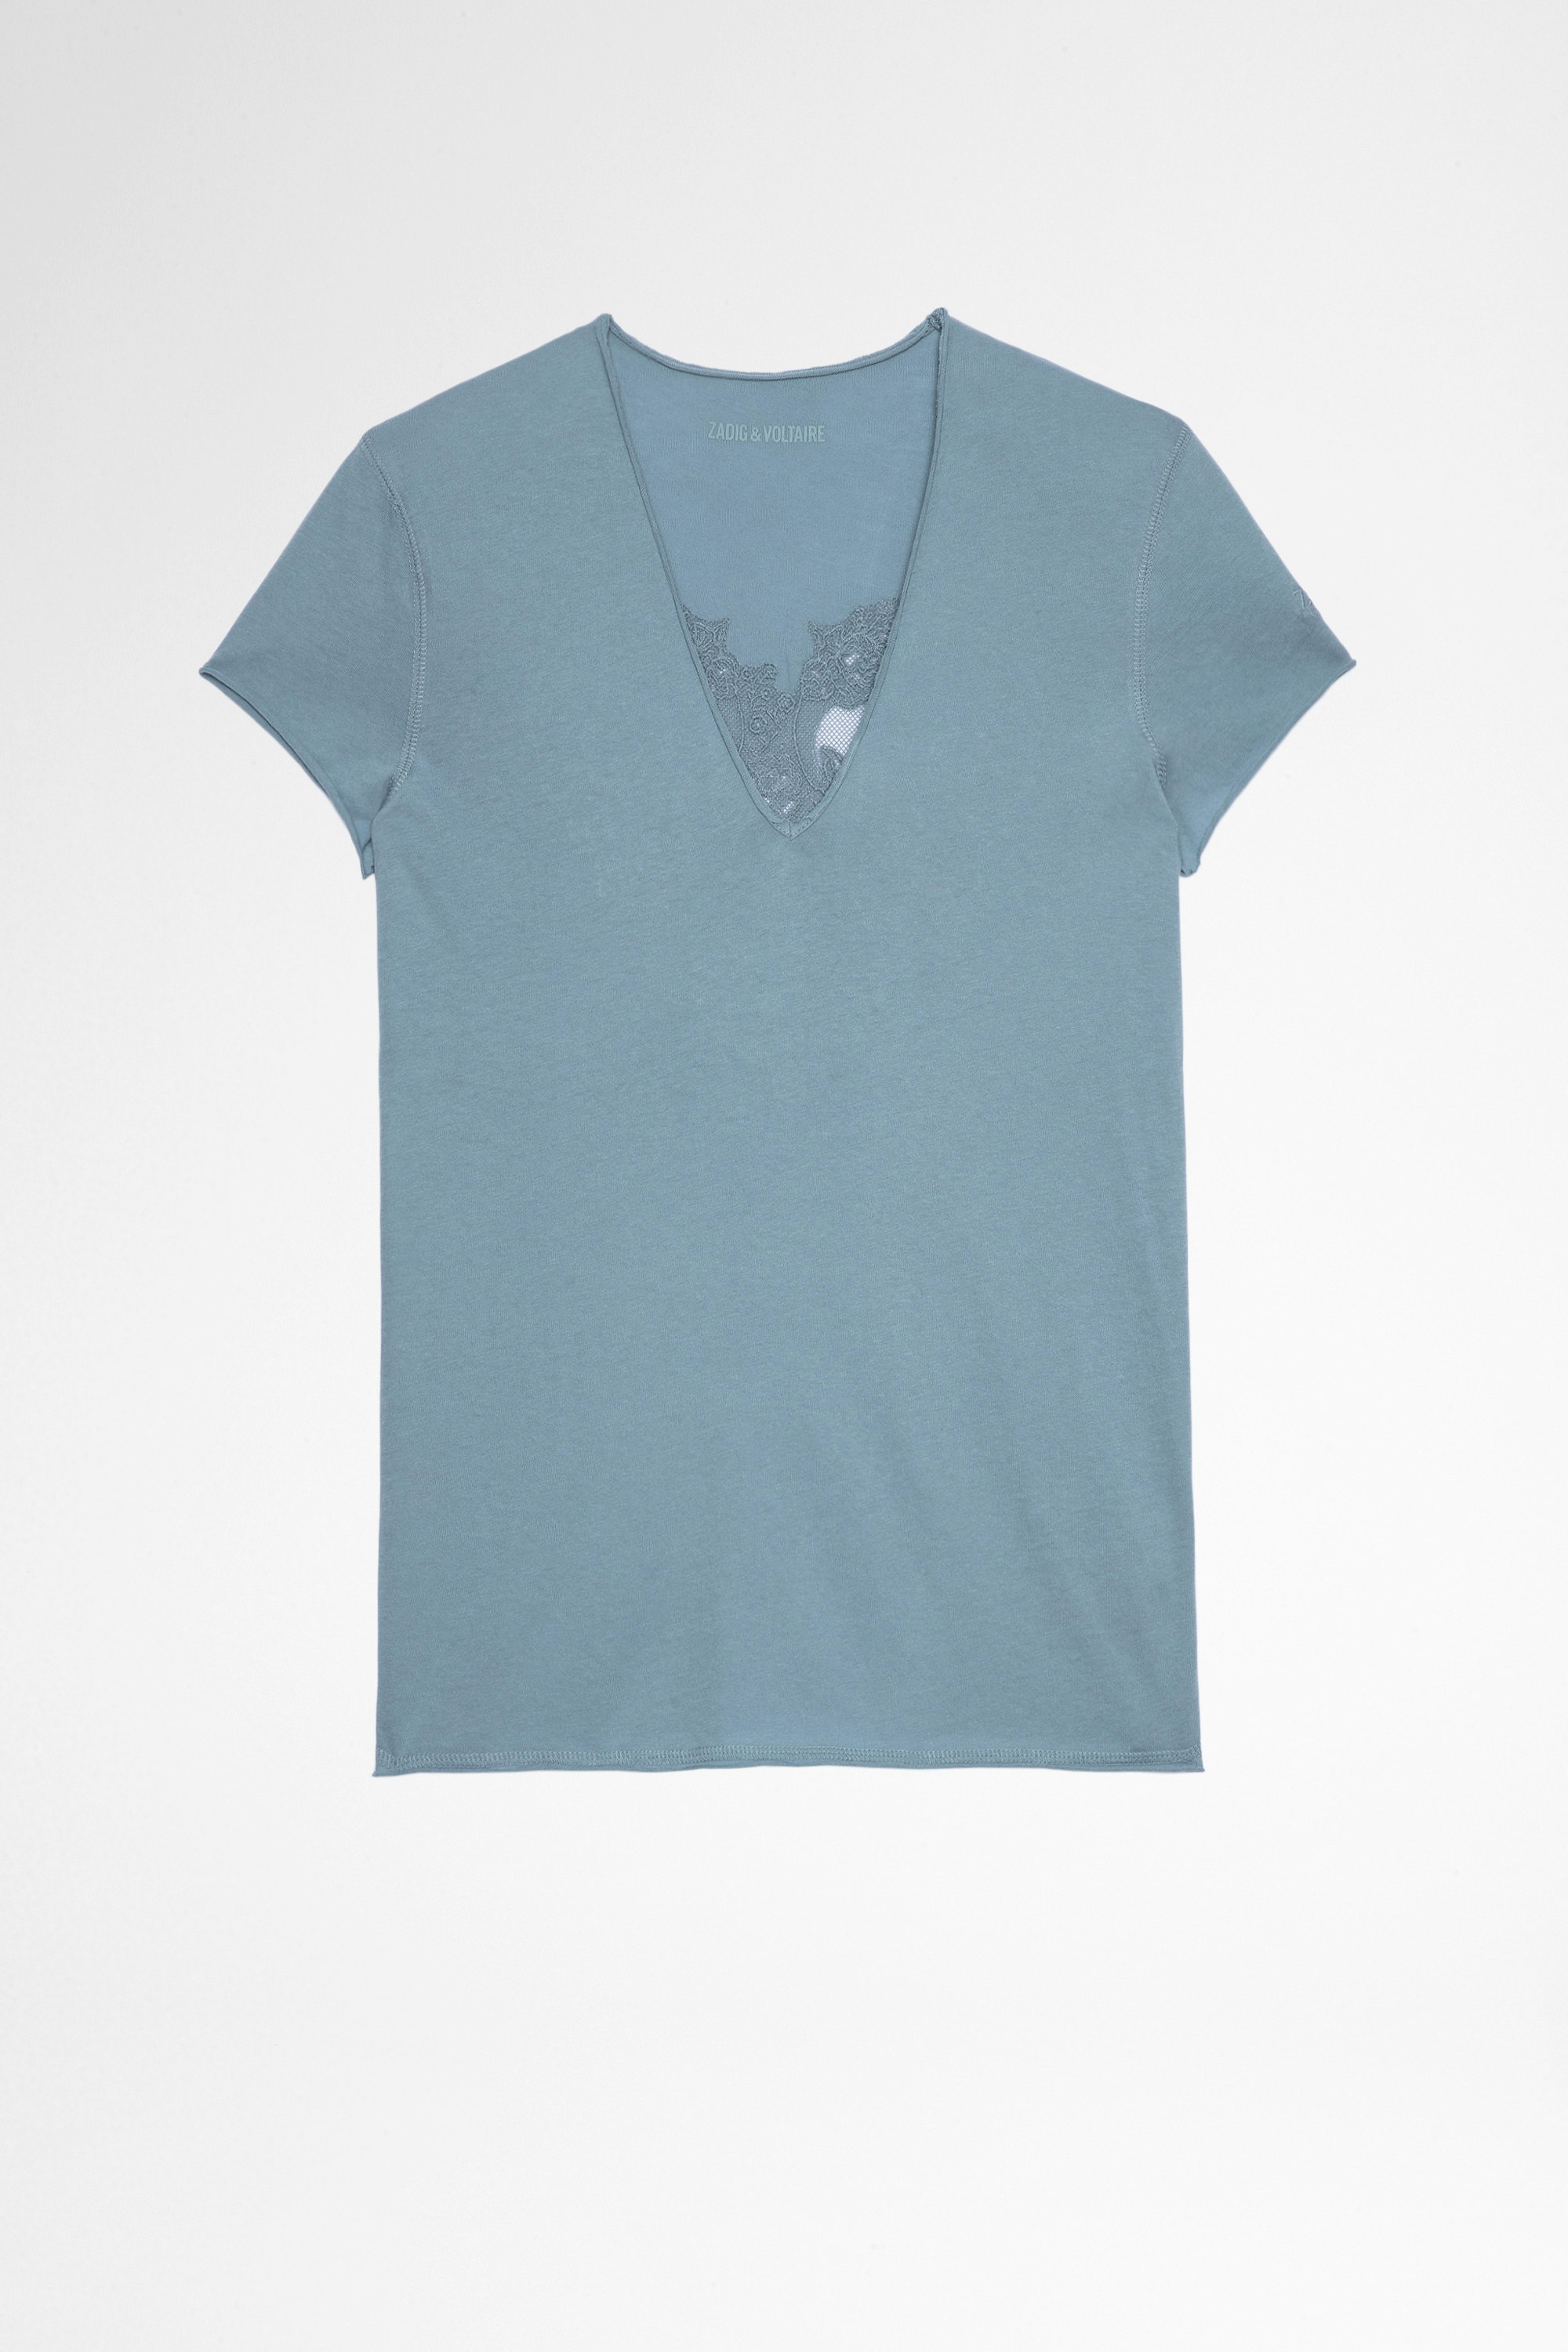 T-Shirt Story Fishnet Double Heart T-shirt en coton bleu ciel  à empiècement skulls transparents au dos